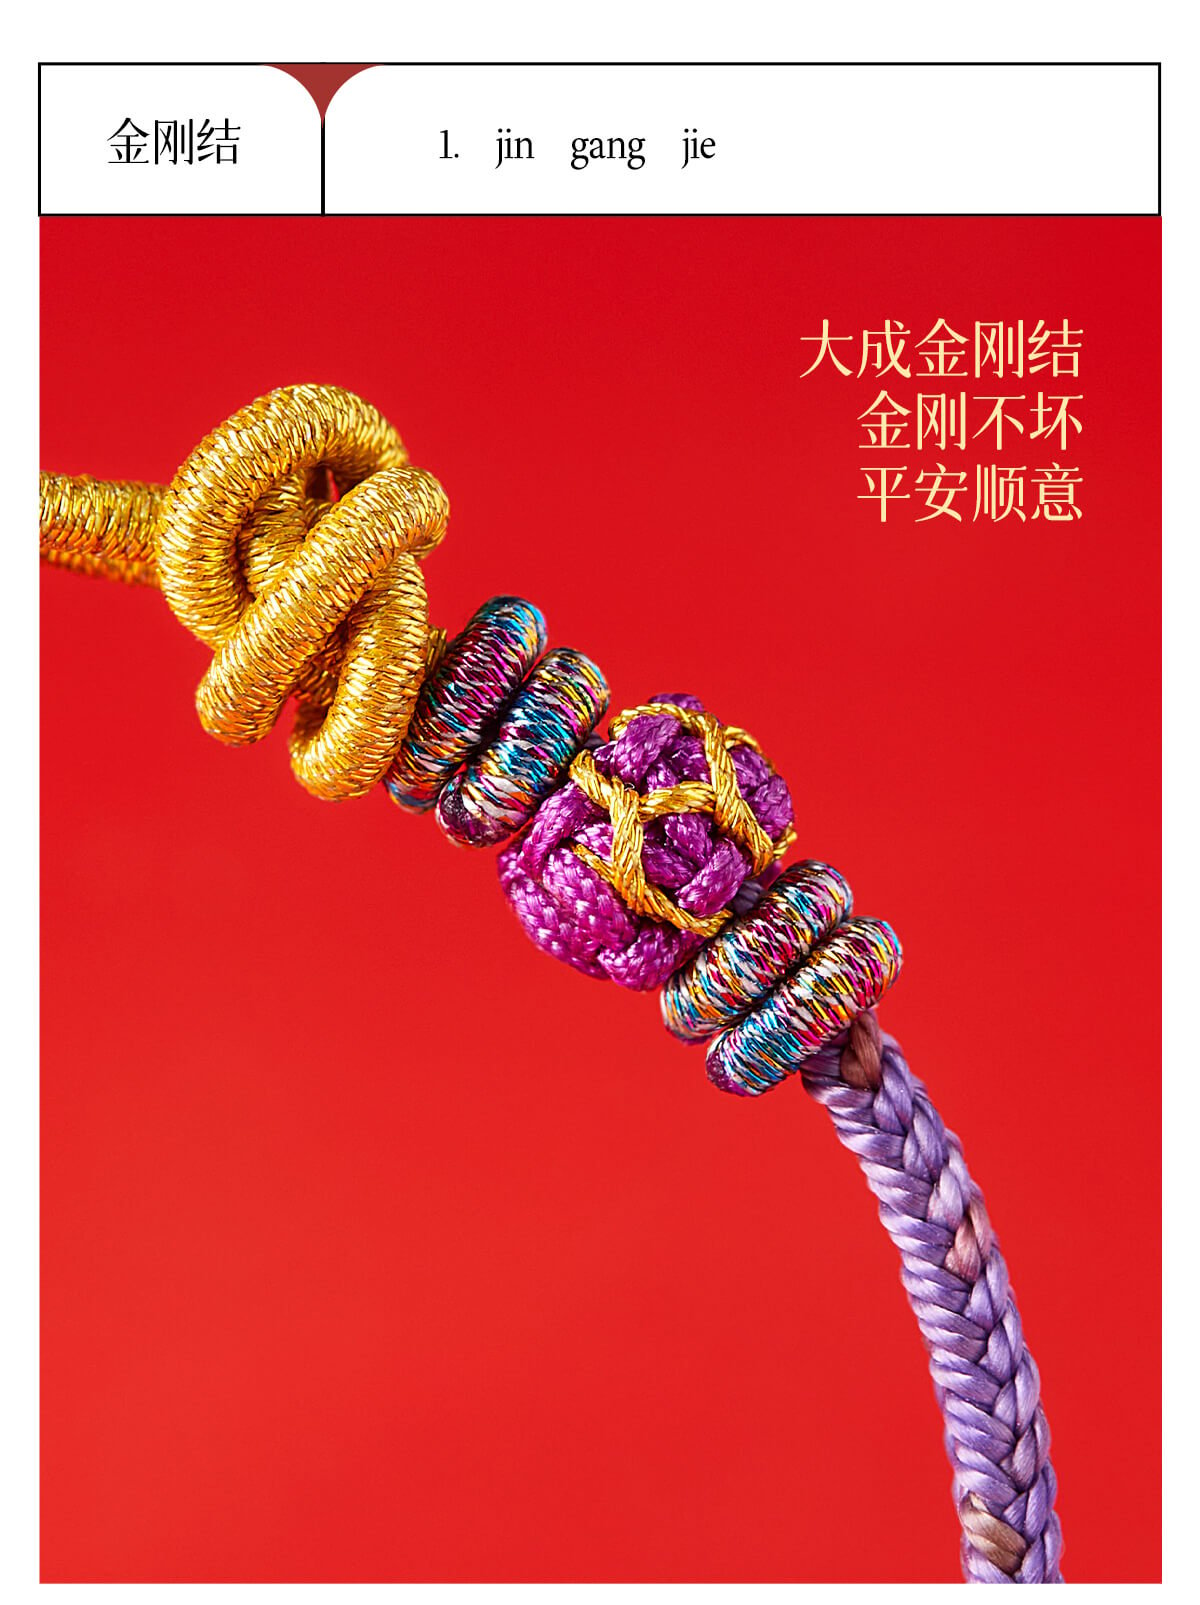 九紫離火龍繩太歲編織紅手繩手鏈